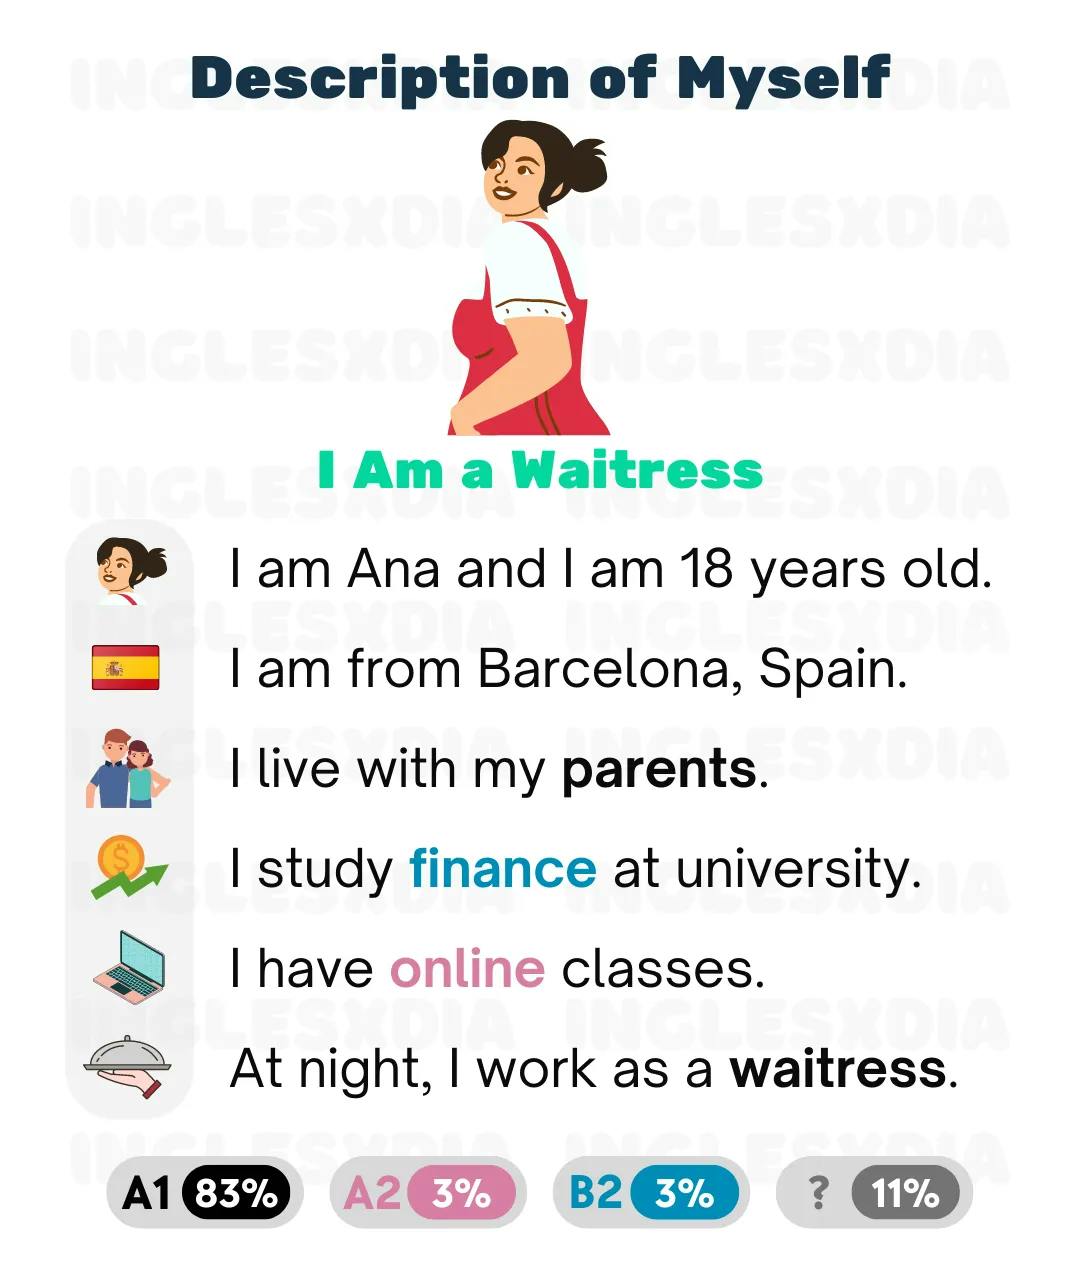 Curso de inglés en línea: Description of Myself · I Am a Waitress